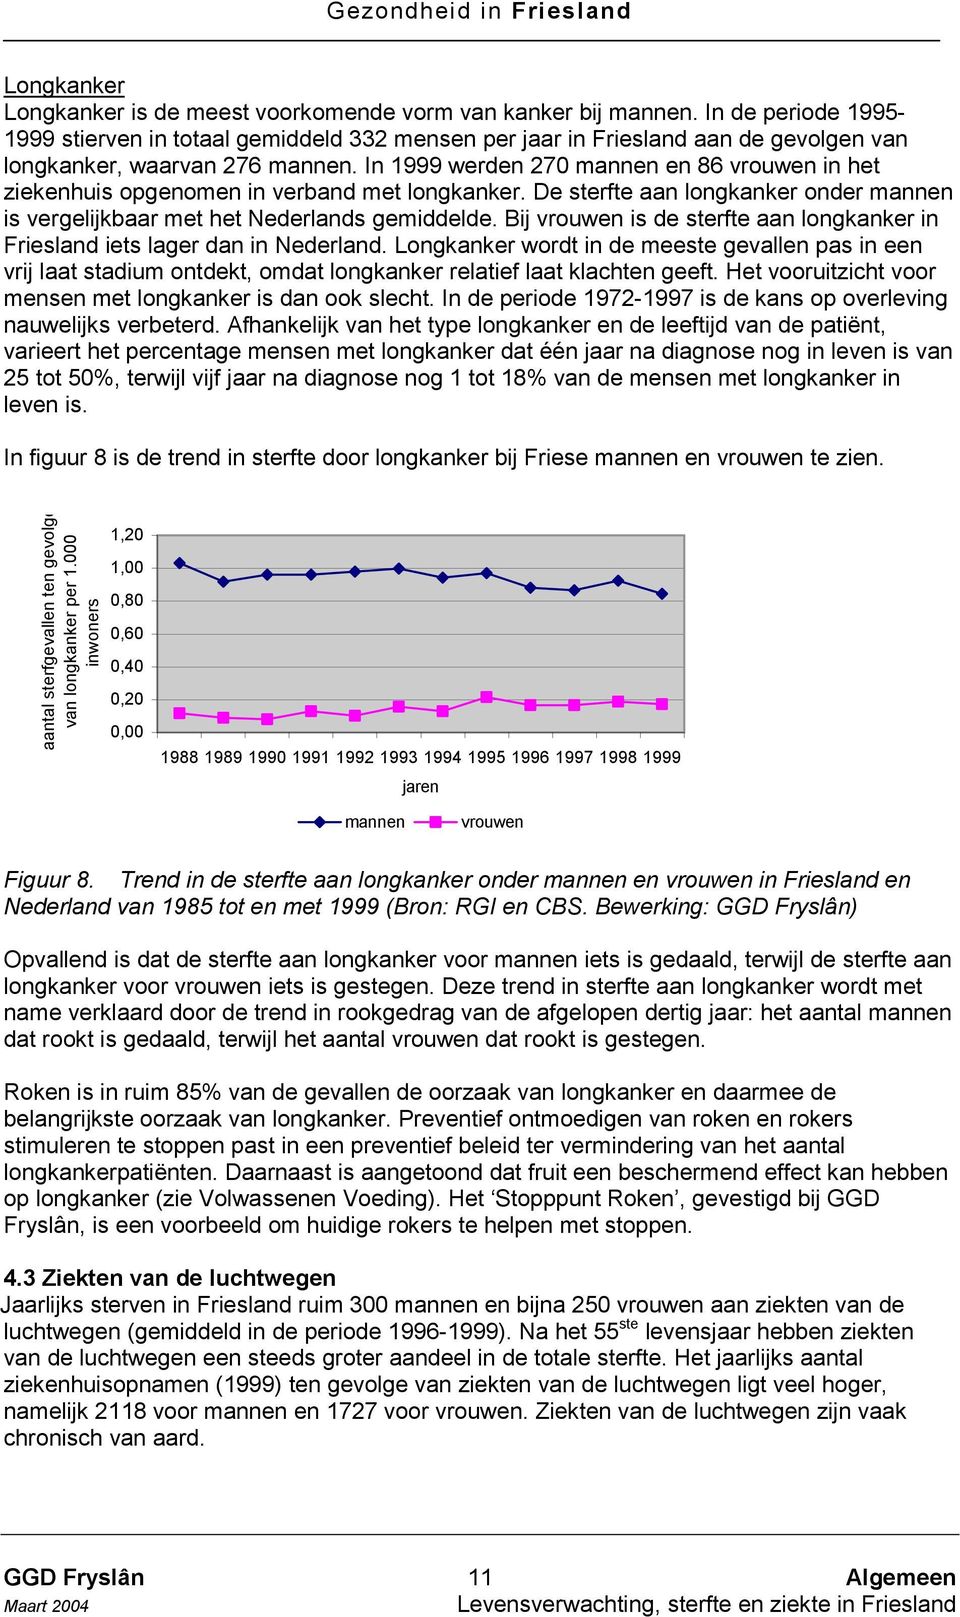 In 1999 werden 270 mannen en 86 vrouwen in het ziekenhuis opgenomen in verband met longkanker. De sterfte aan longkanker onder mannen is vergelijkbaar met het Nederlands gemiddelde.